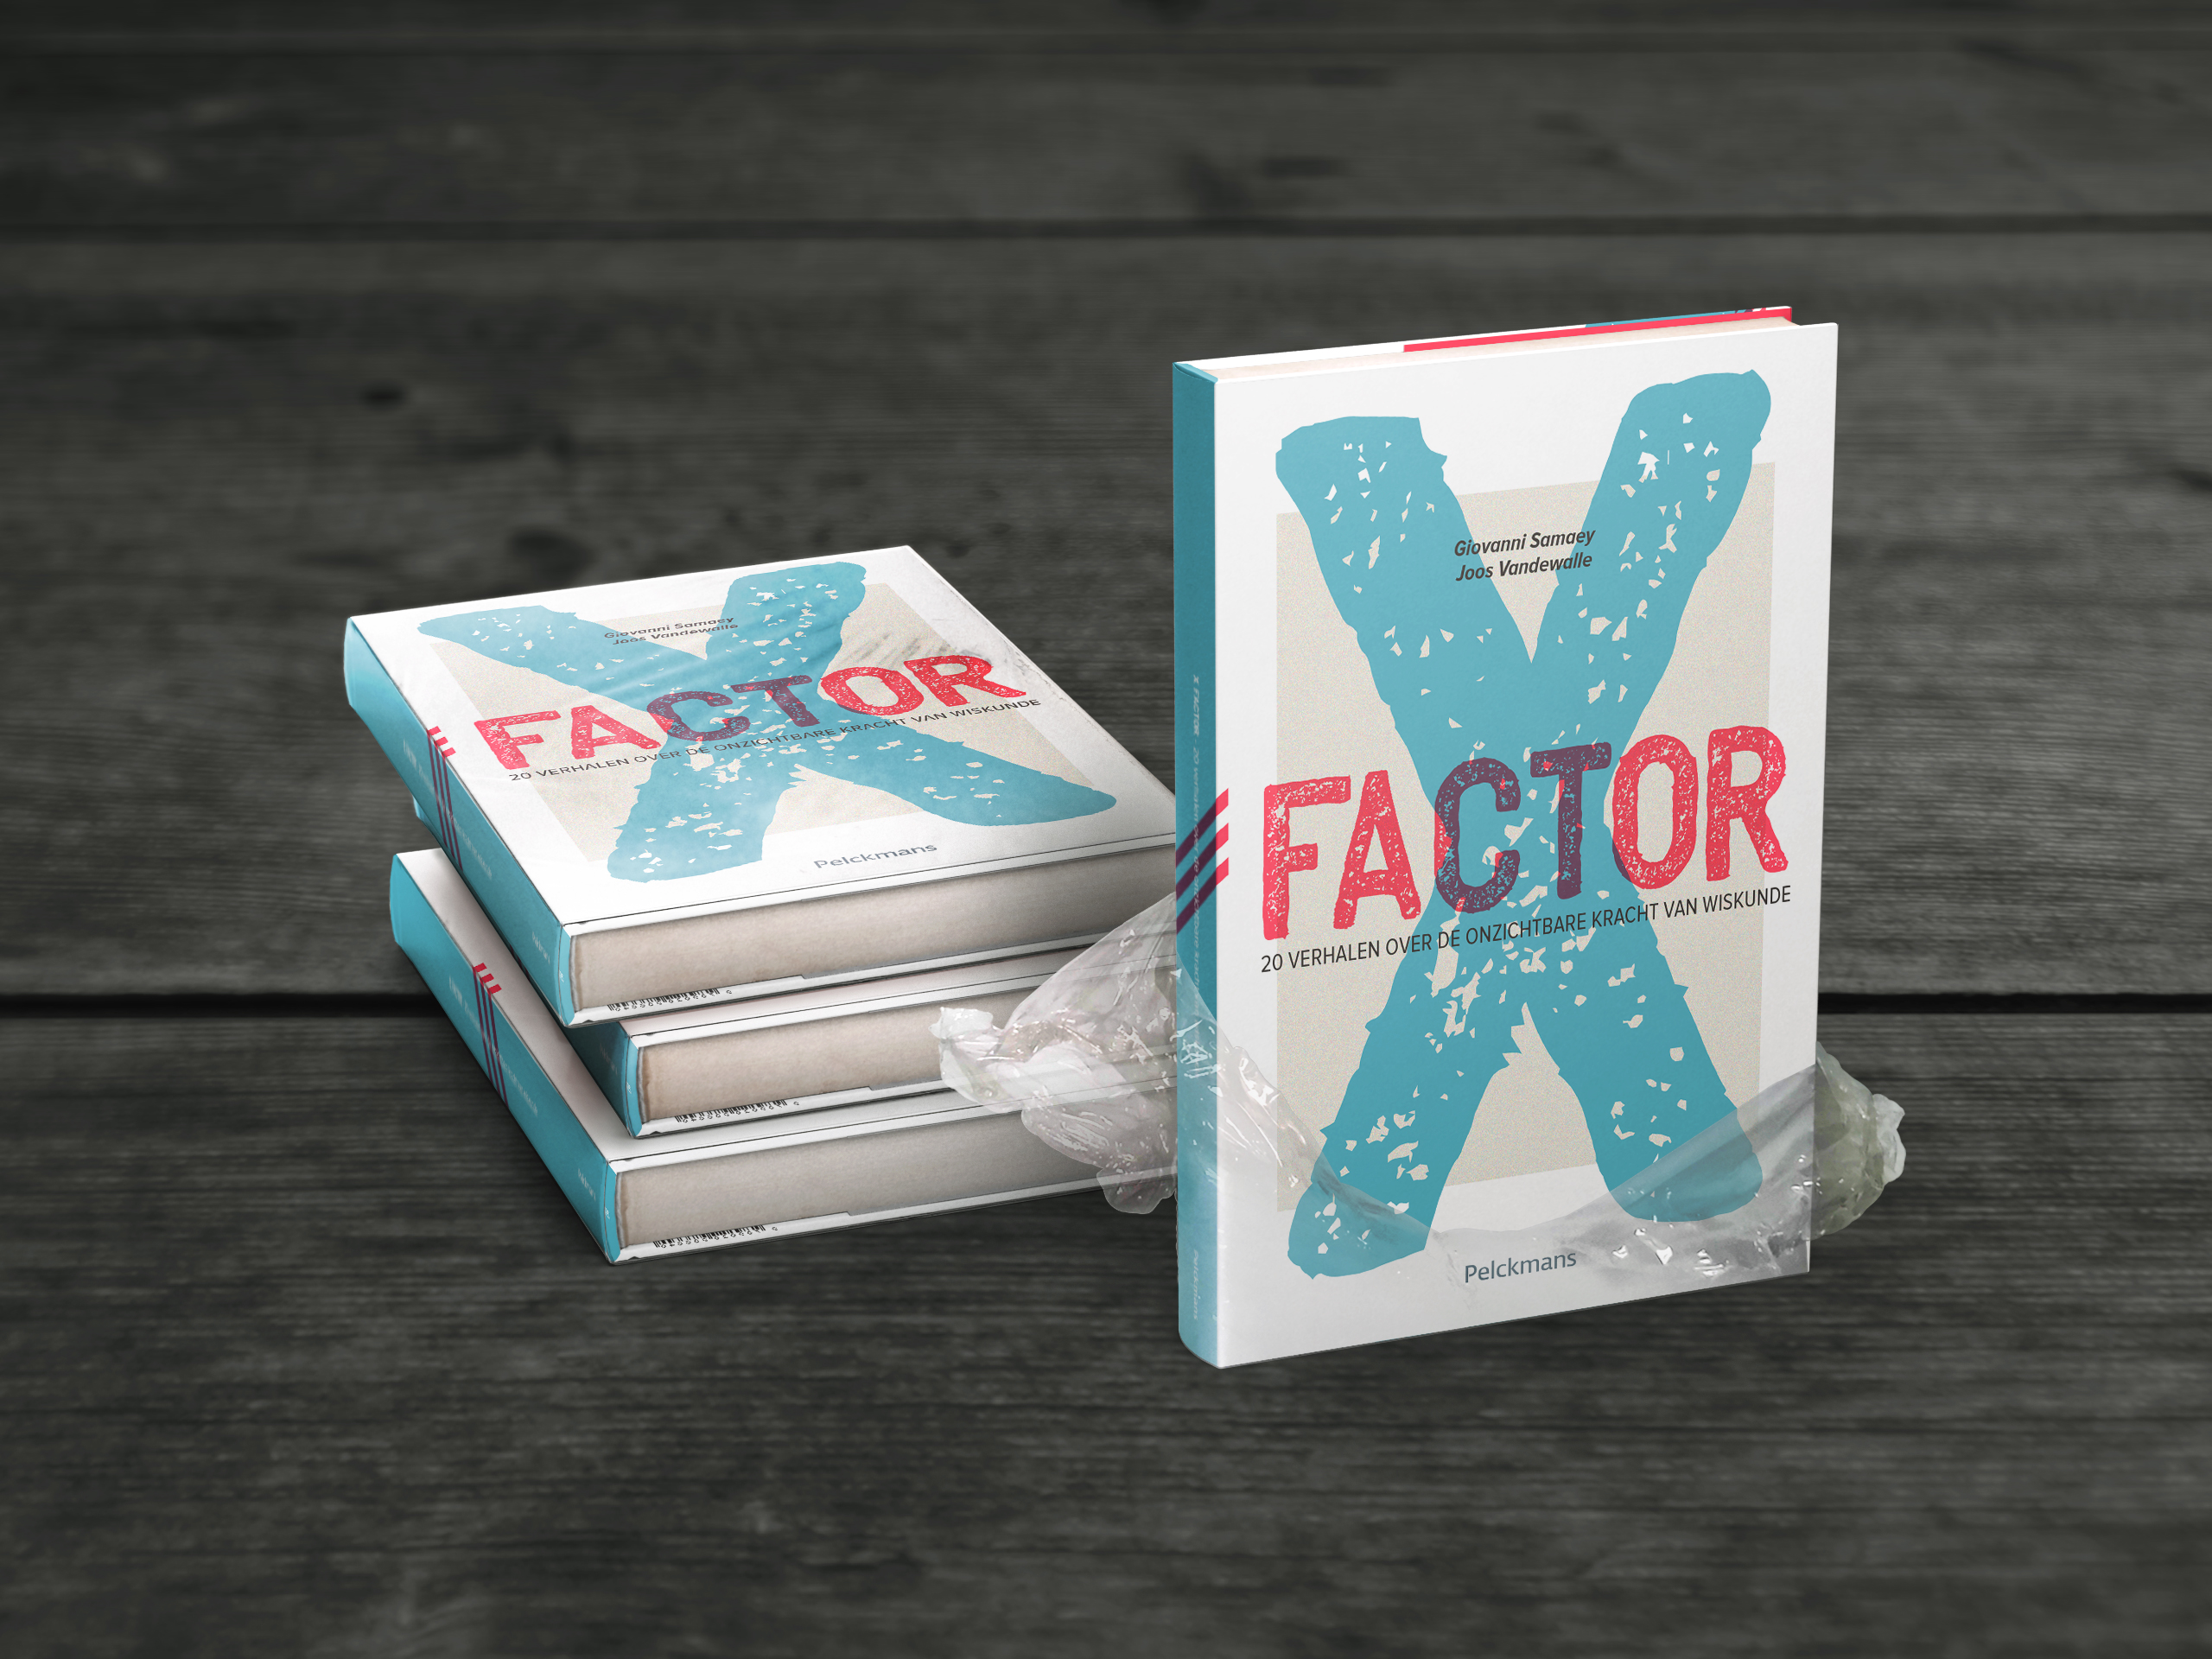 X Factor cover design